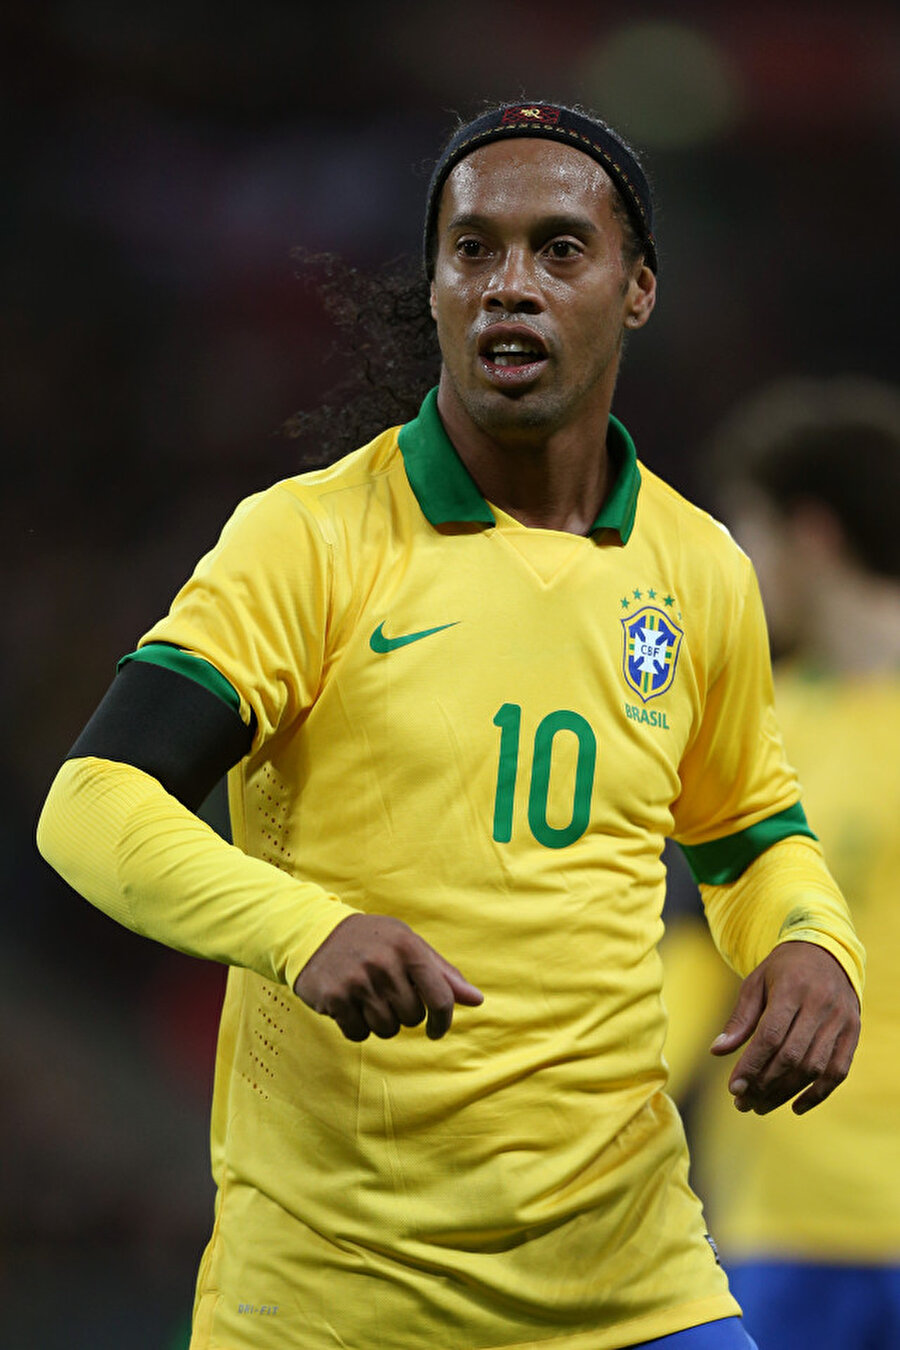 
                                    
                                    
                                    Barcelona’nın oyun yapısı tamamen Ronaldinho etrafında planlanıyordu. Ancak 2006 yılında Almanya’da düzenlenen Dünya Kupası’nın ardından Ronaldinho hiçbir zaman eski günlerine dönemedi.
                                
                                
                                